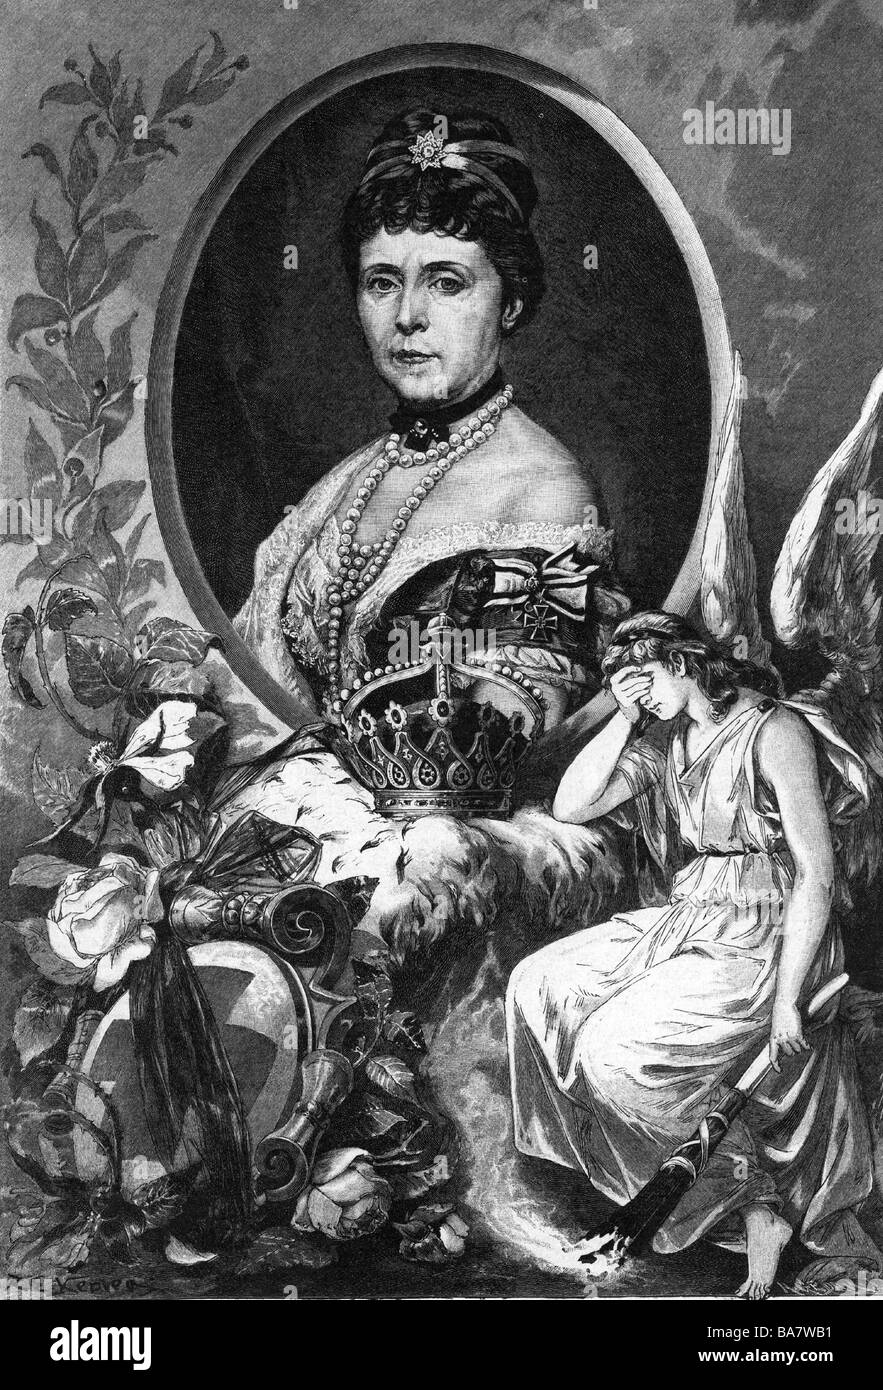 Augusta Marie, 30.9.11.11 - 7.1.1890, deutsche Presse 18.1.1871 - 9.3.1888, Porträt in allegorischer Einfassung, Holzgravur, veröffentlicht nach ihrem Tod, Stockfoto